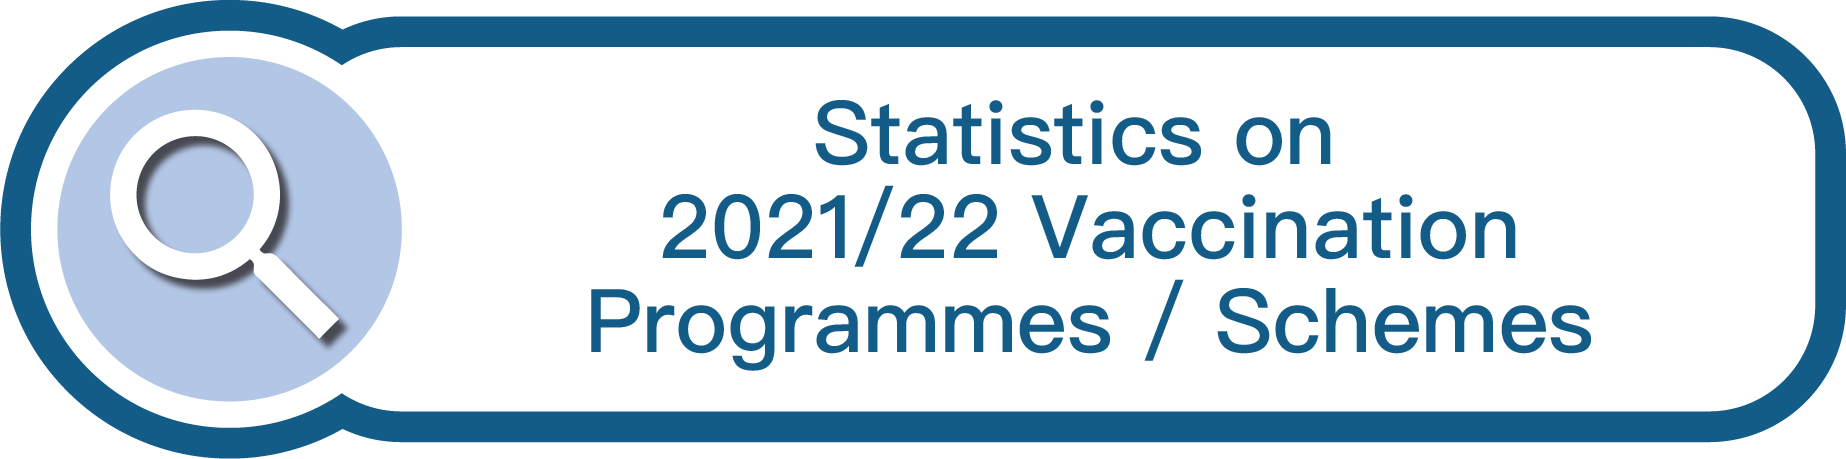 Statistics on 2022/23 Vaccination Programmes/Schemes